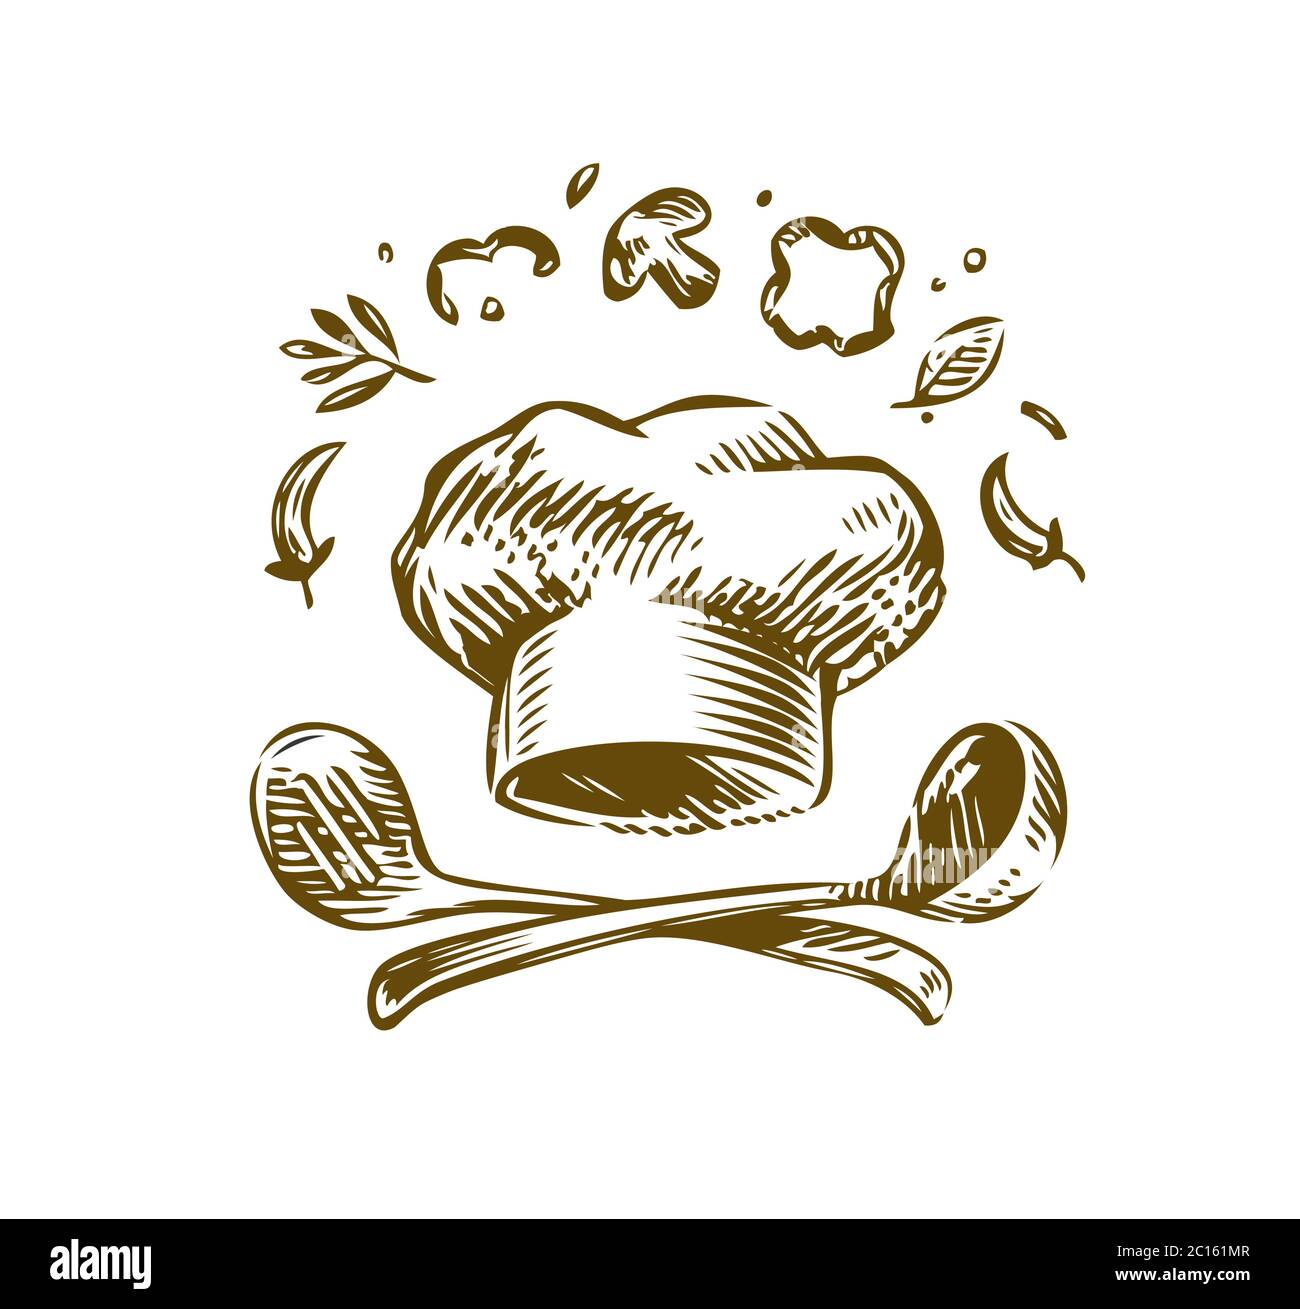 Cucina con logo disegnata a mano. Illustrazione vettoriale vintage. Design del menu per il ristorante e il caffè Illustrazione Vettoriale